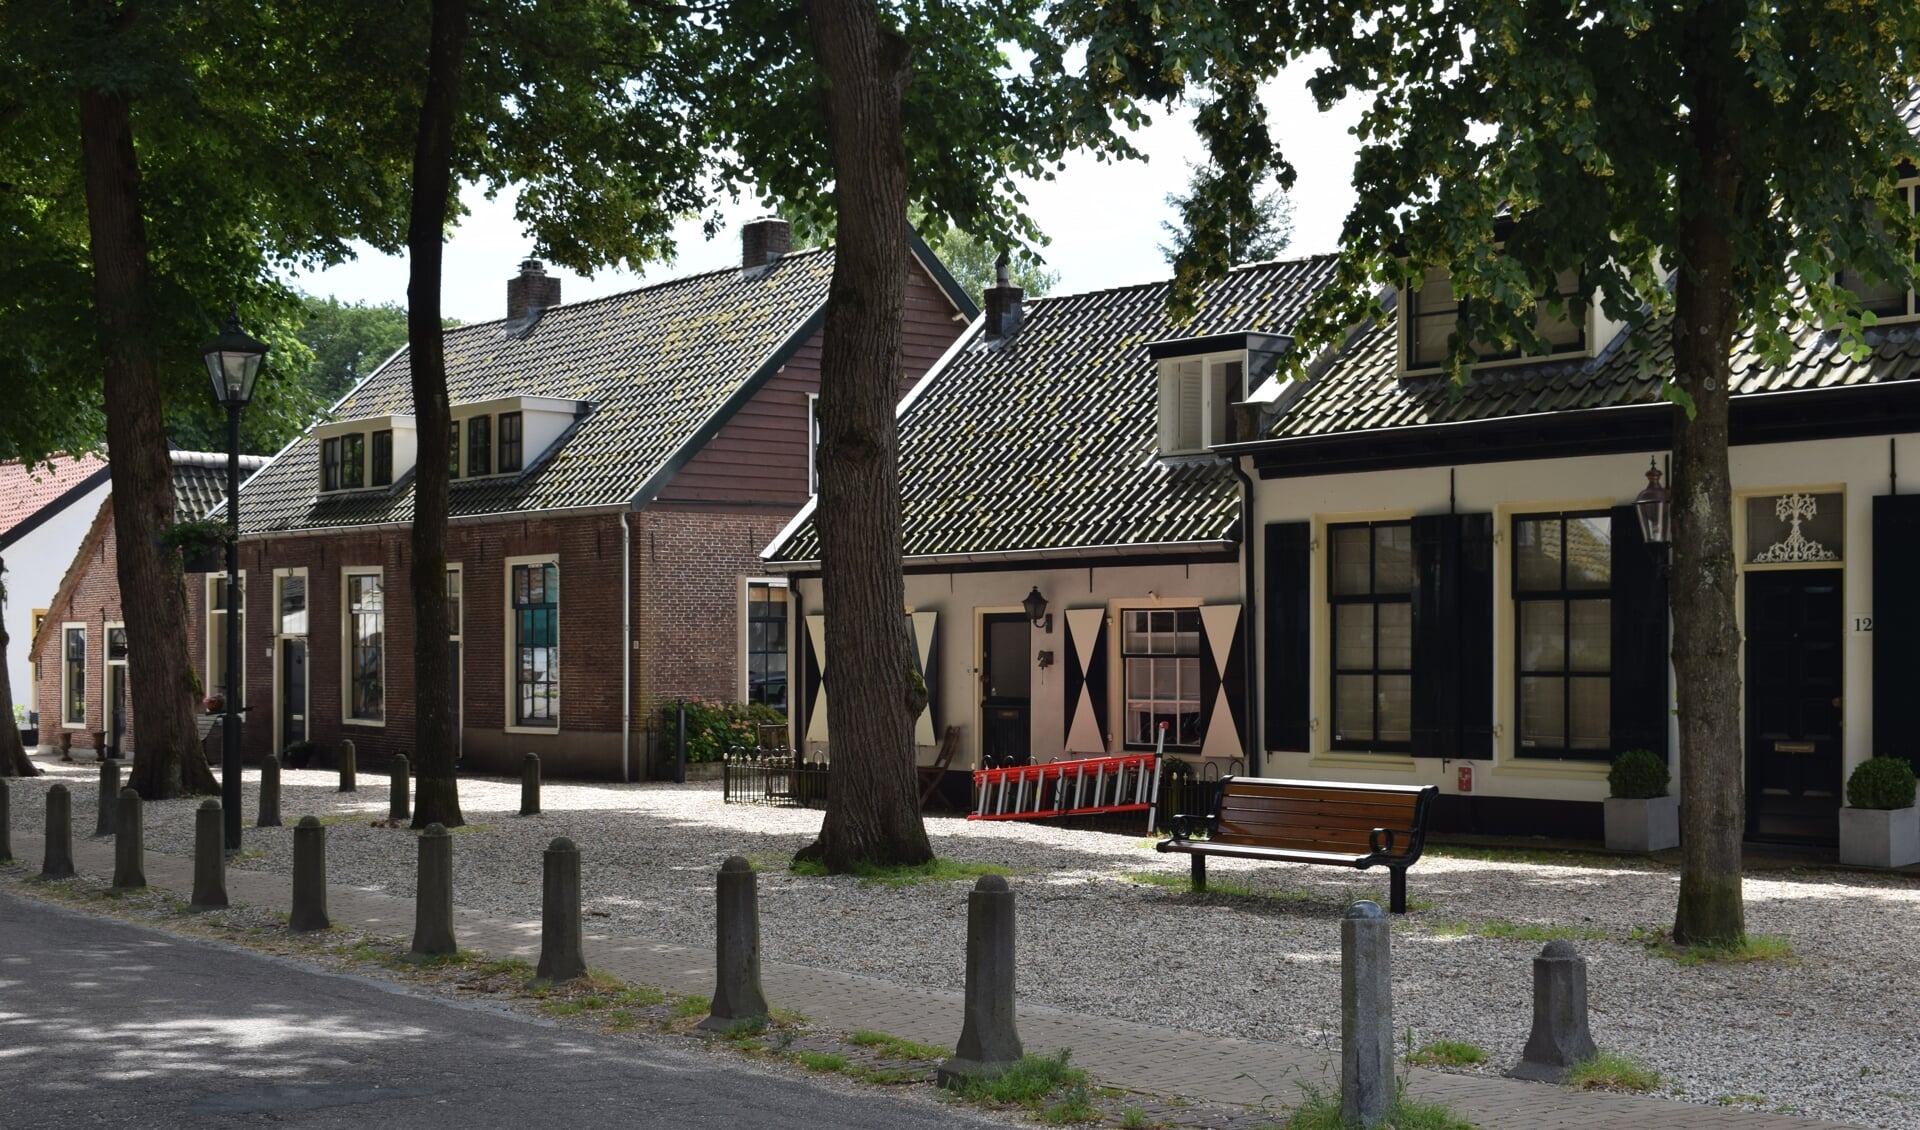 Lage Vuursche heeft een beschermd dorpsgezicht.